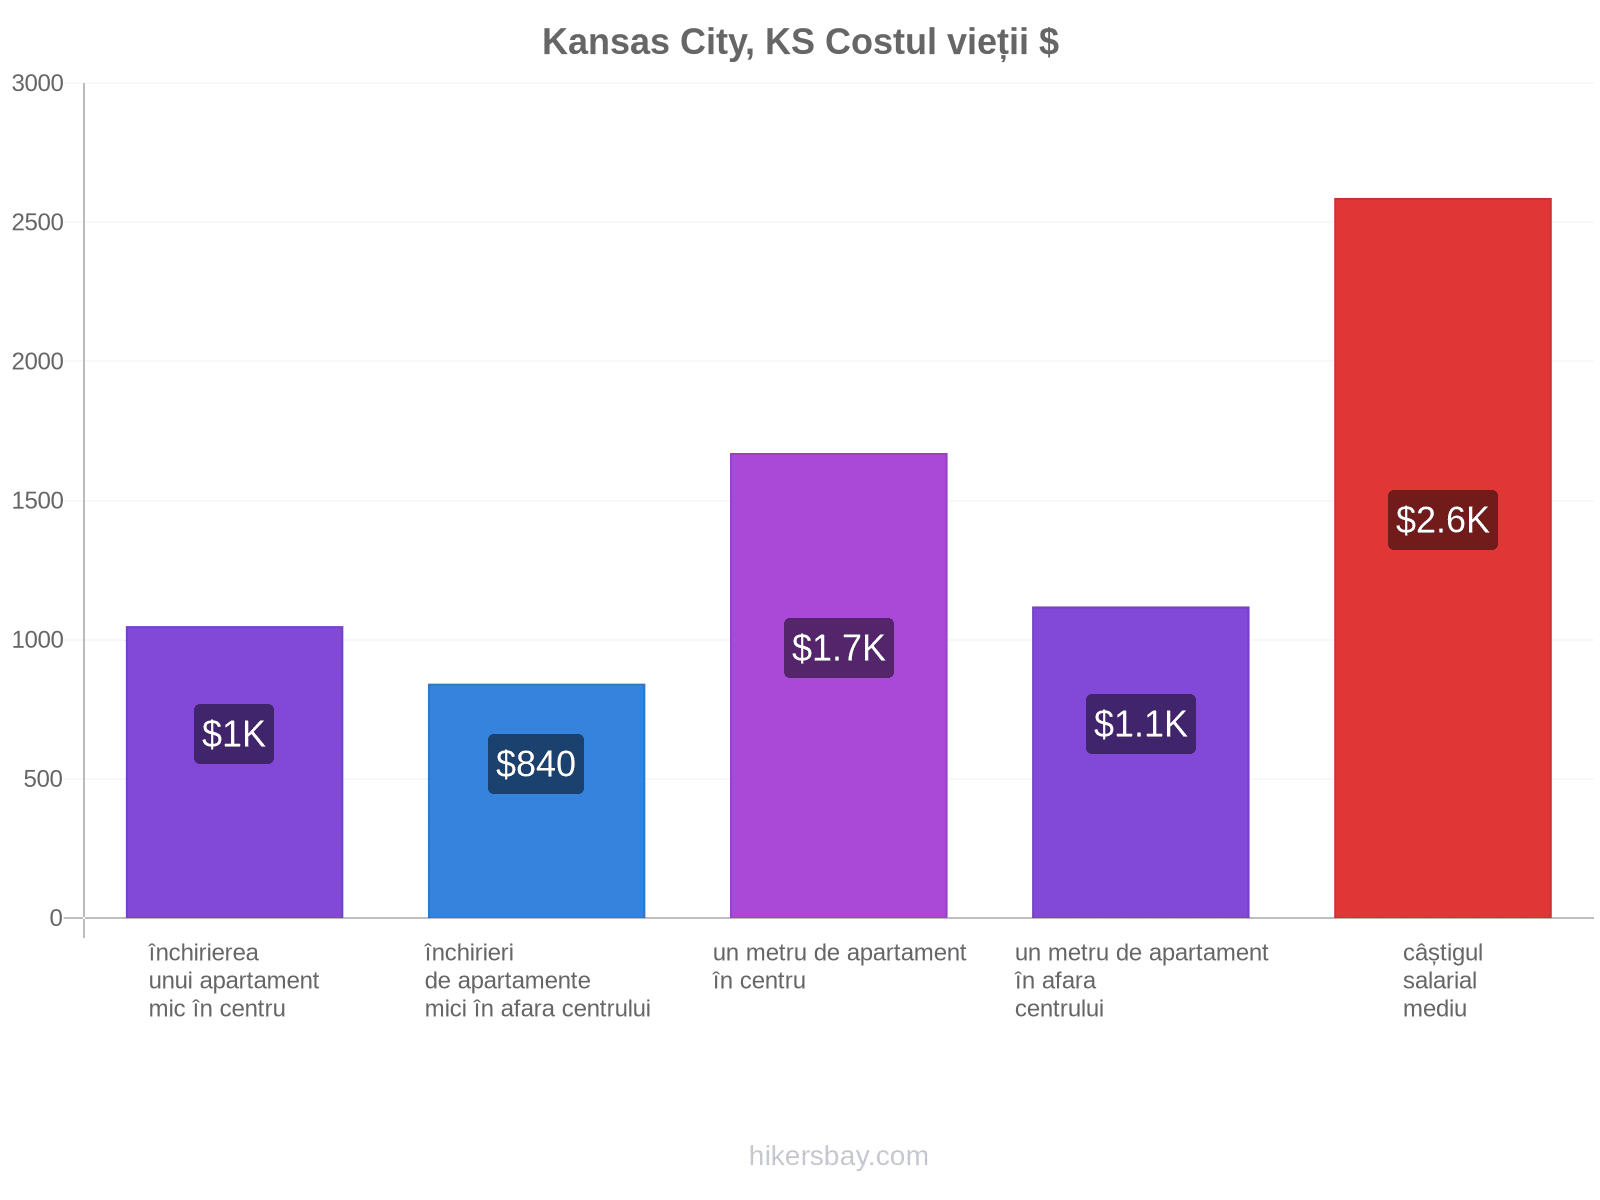 Kansas City, KS costul vieții hikersbay.com